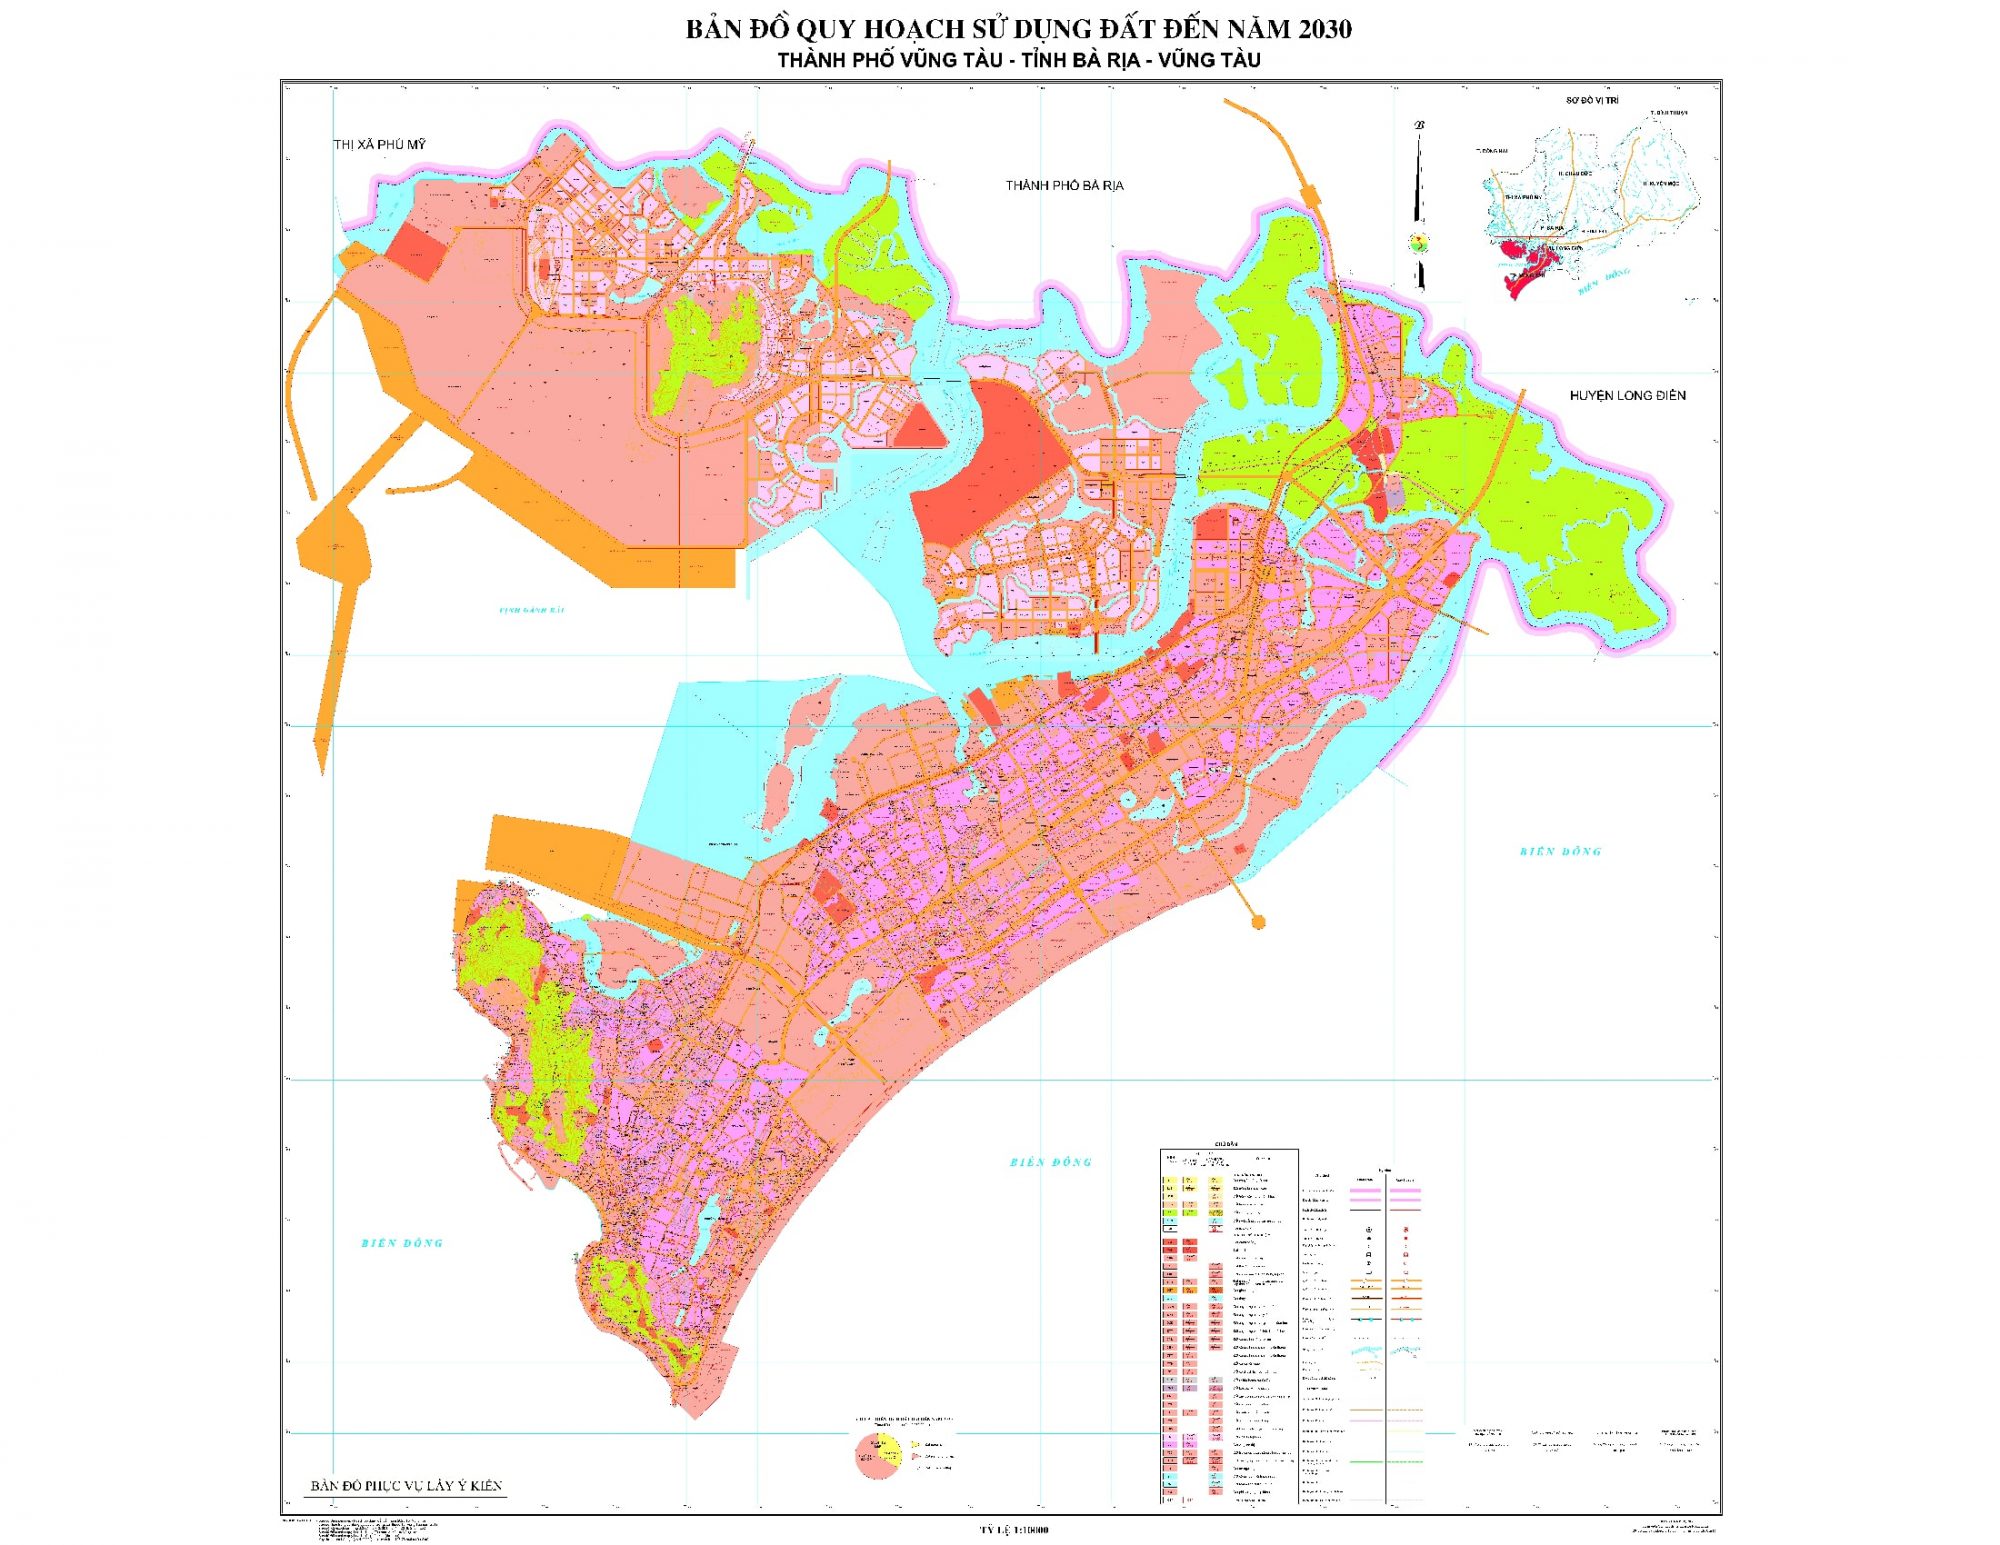 Bản đồ quy hoạch thành phố Vũng Tàu, tỉnh Bà Rịa - Vũng Tàu đến năm 2030